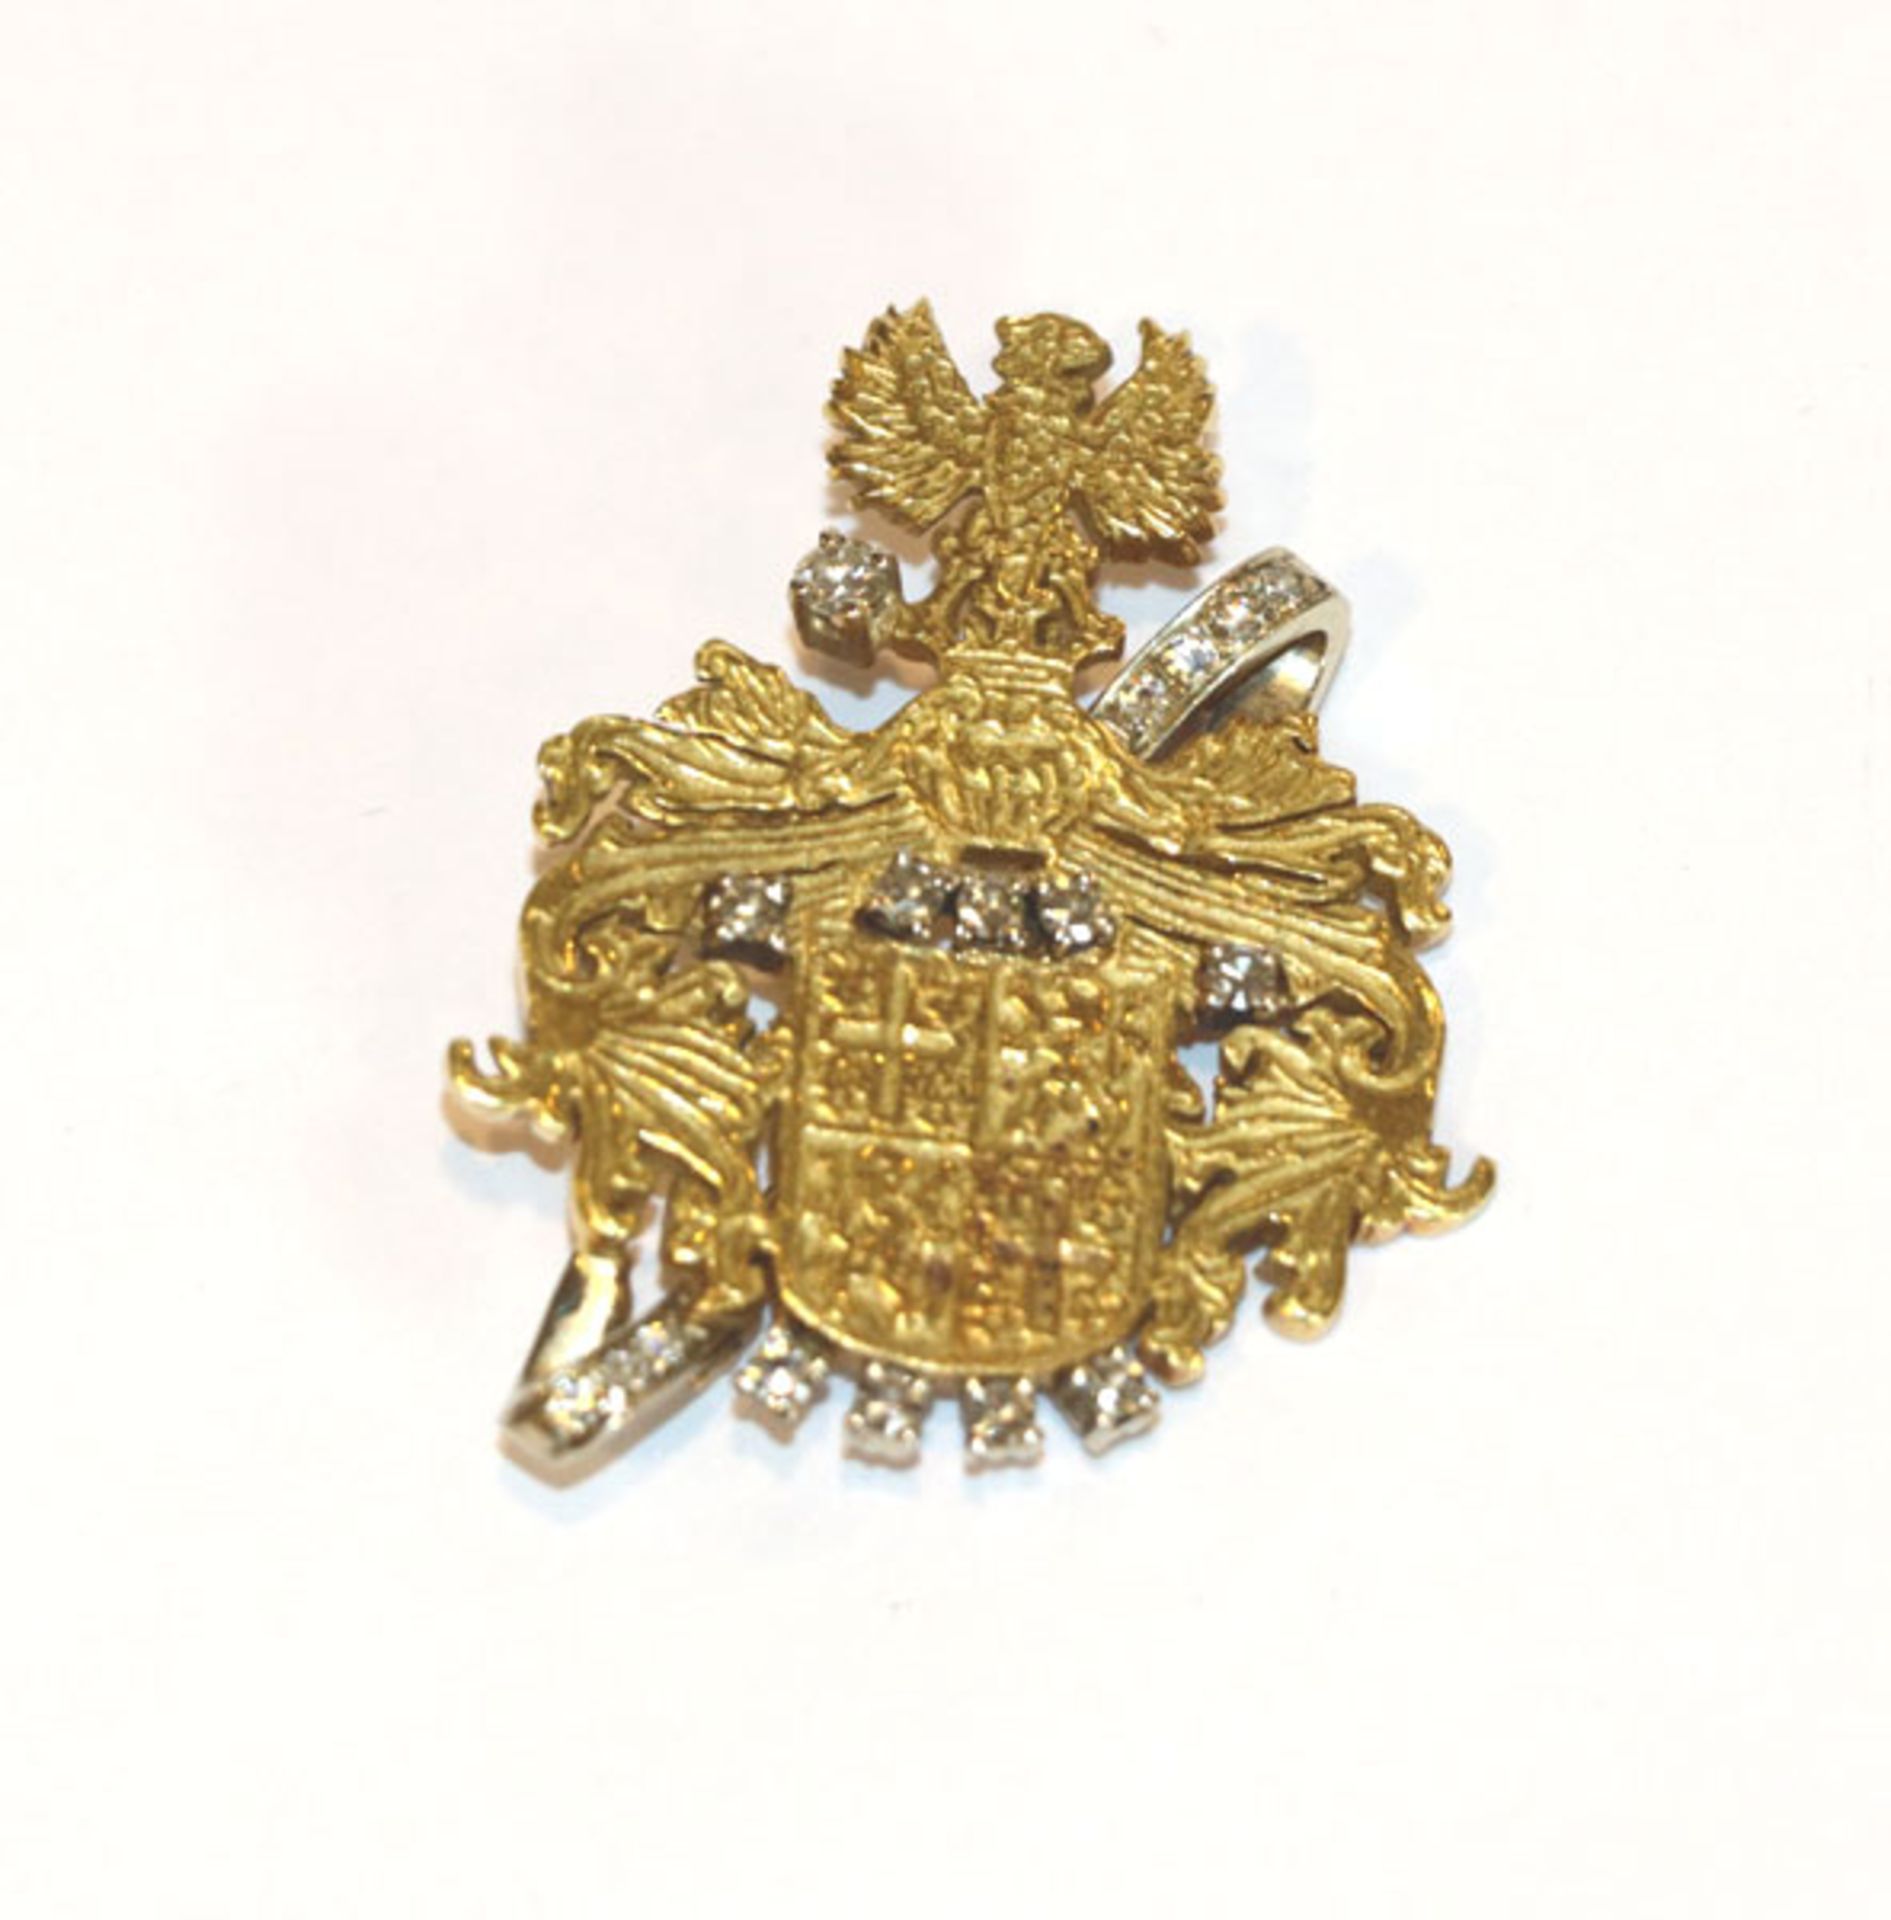 18 k Gelbgold Brosche in Form eines Wappens mit Reliefdekor und 17 in Weißgold gefaßten Diamanten,